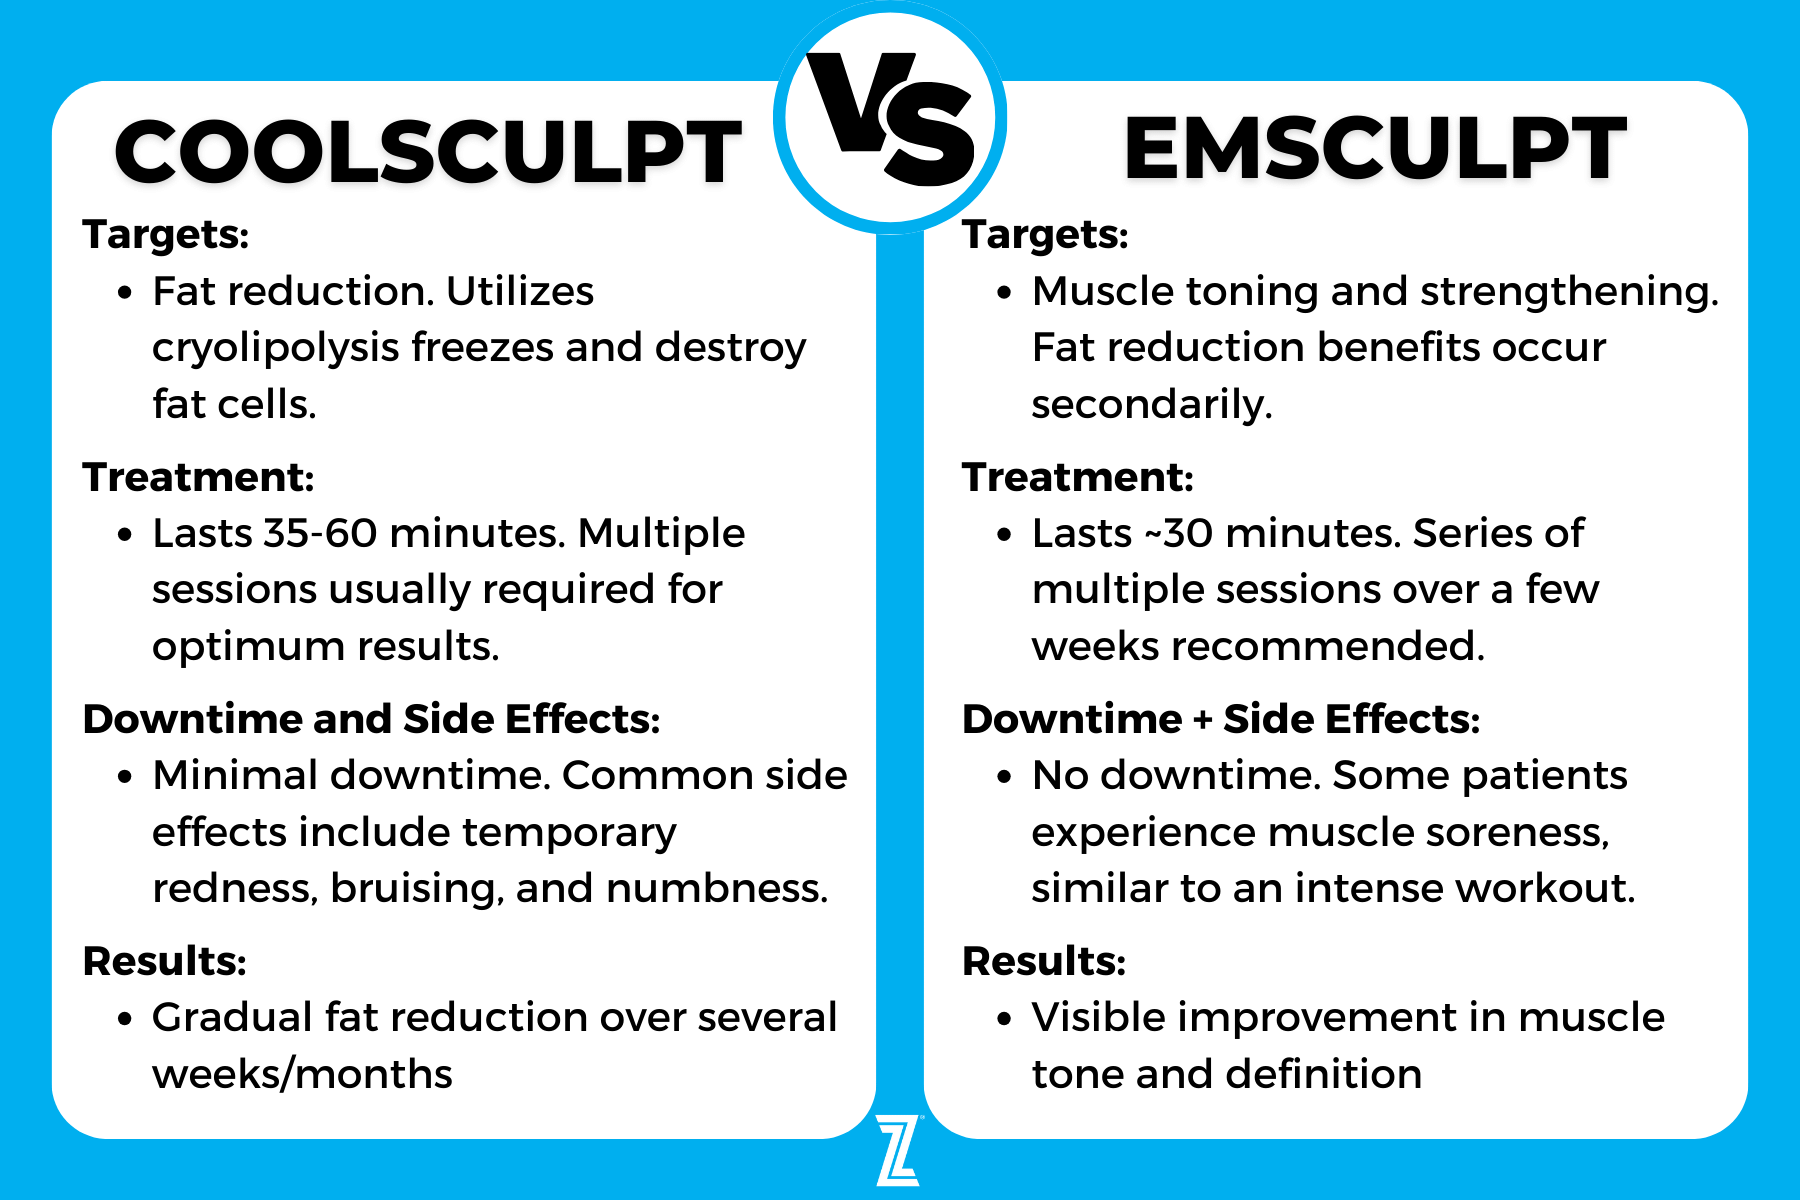 Comparing Coolsculpting vs Emsculpt for weightloss